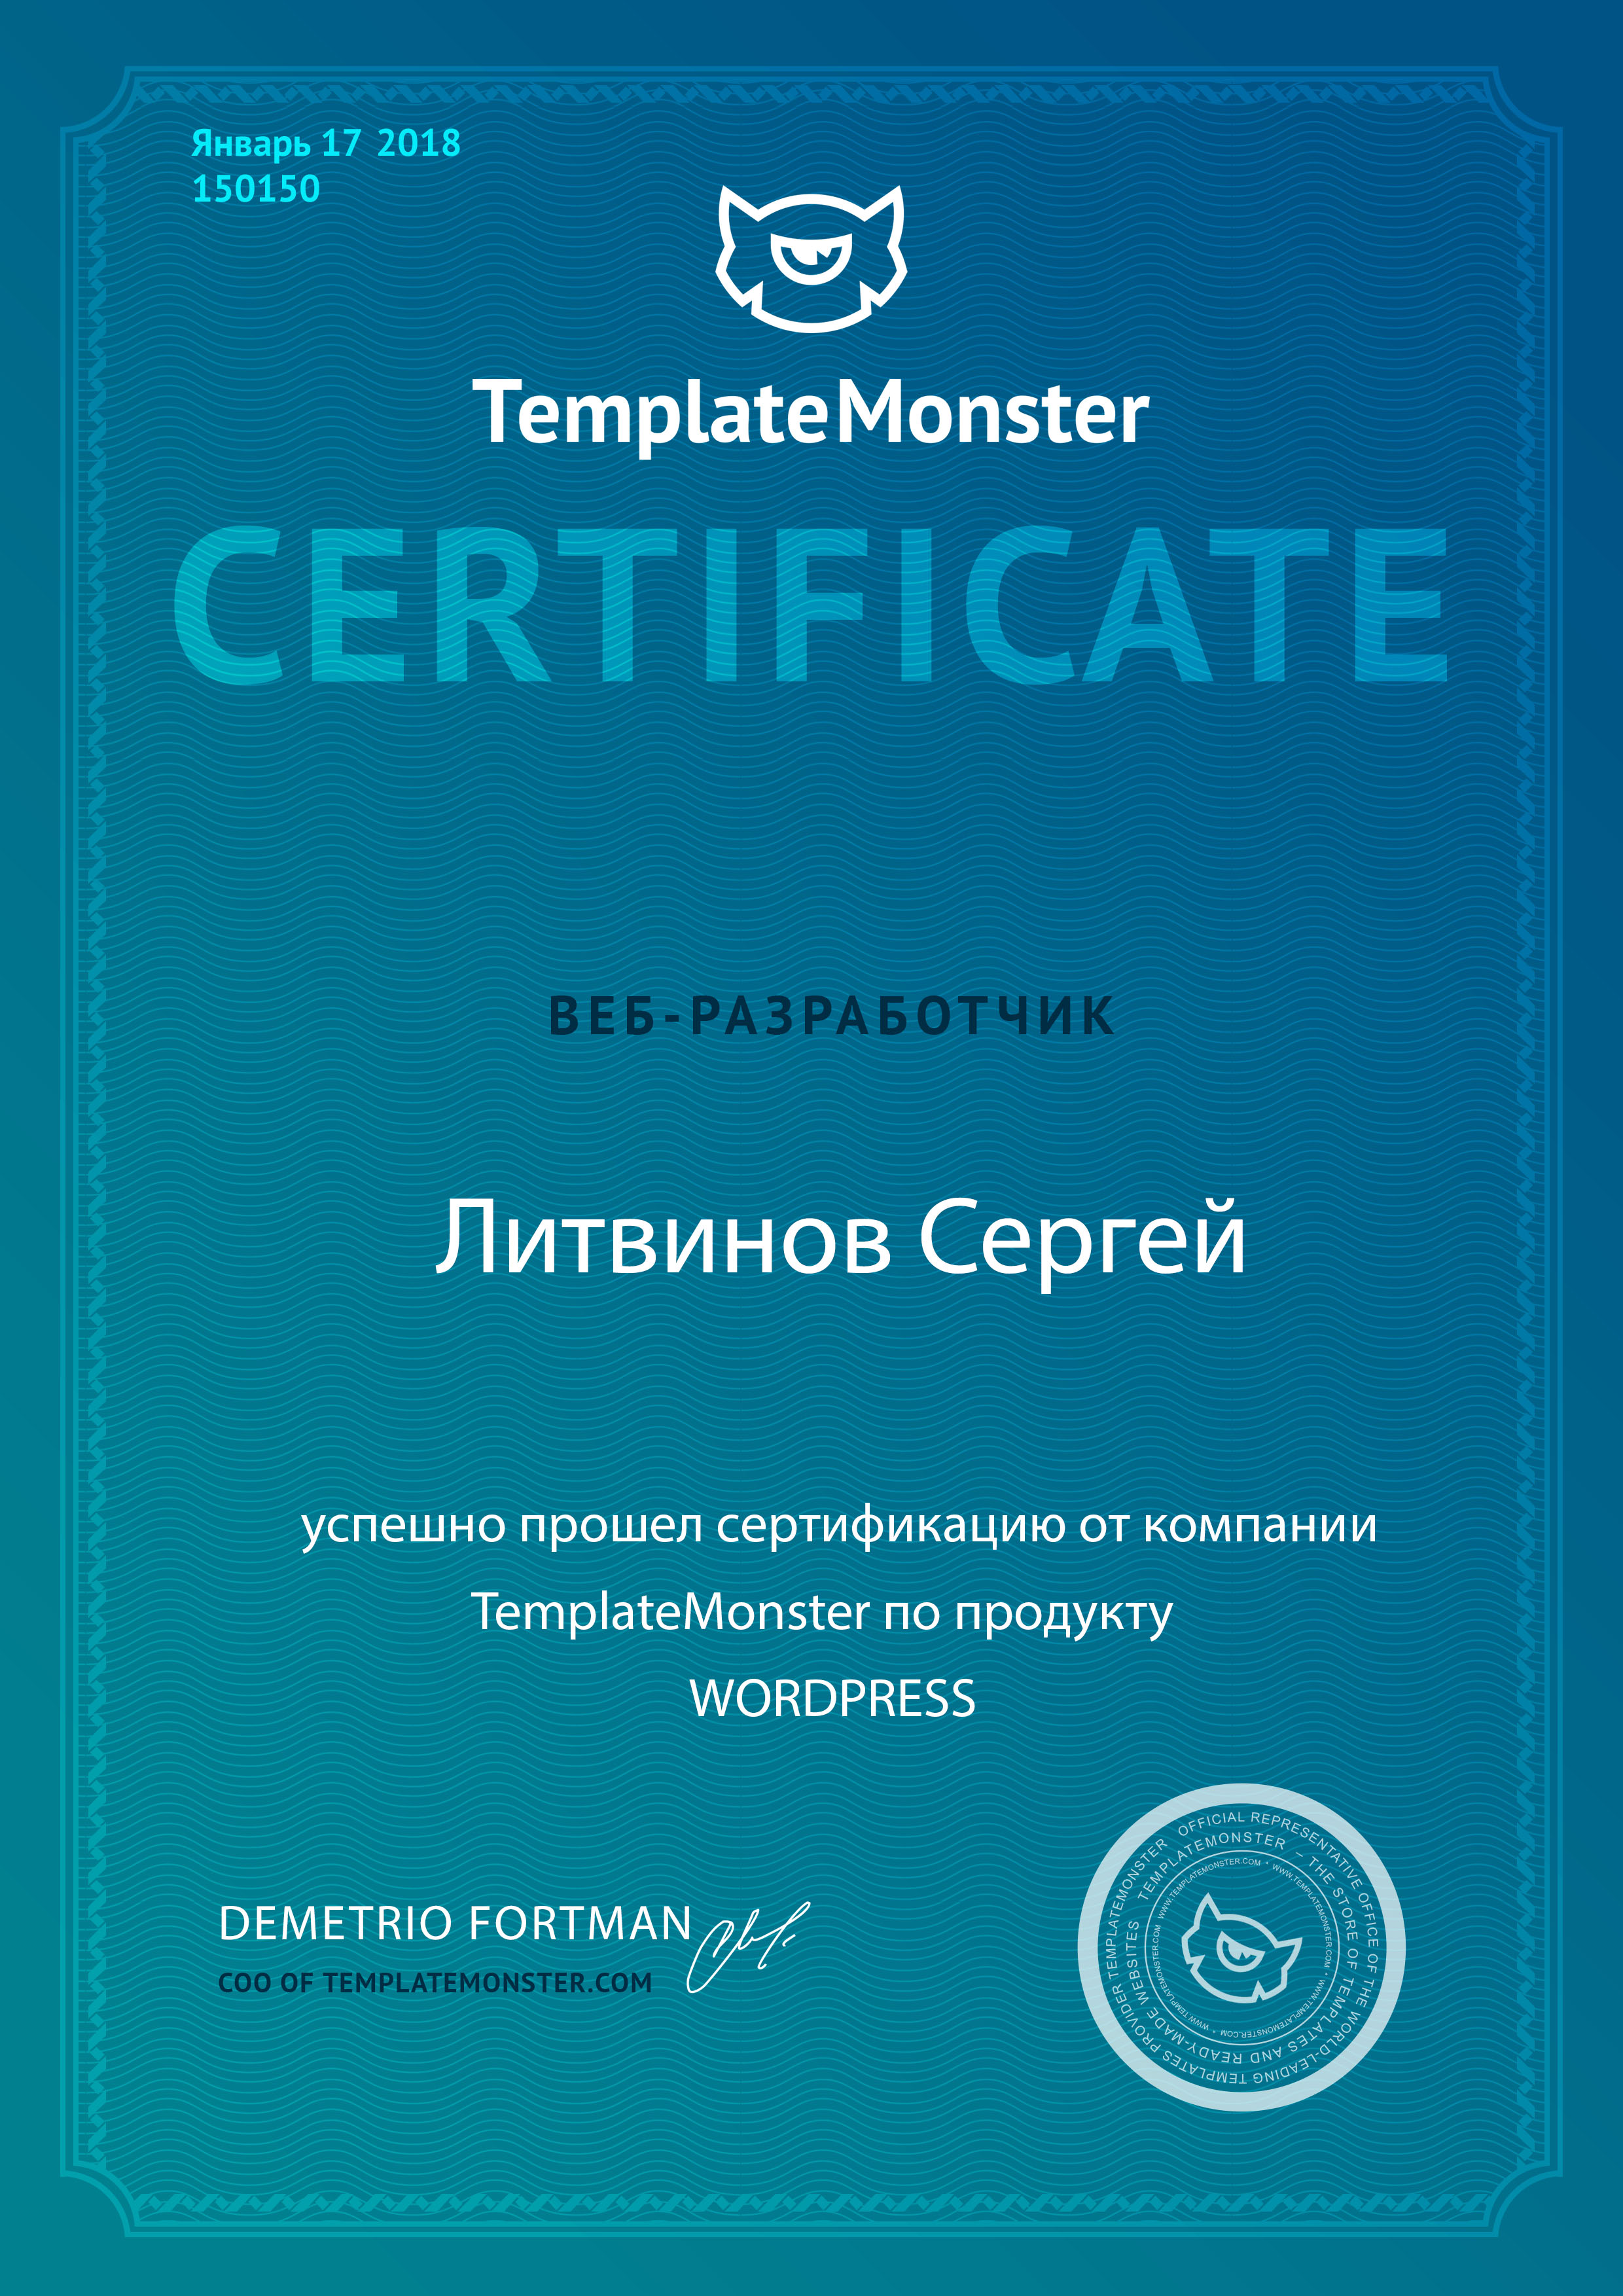 сертифицированный вебмастер